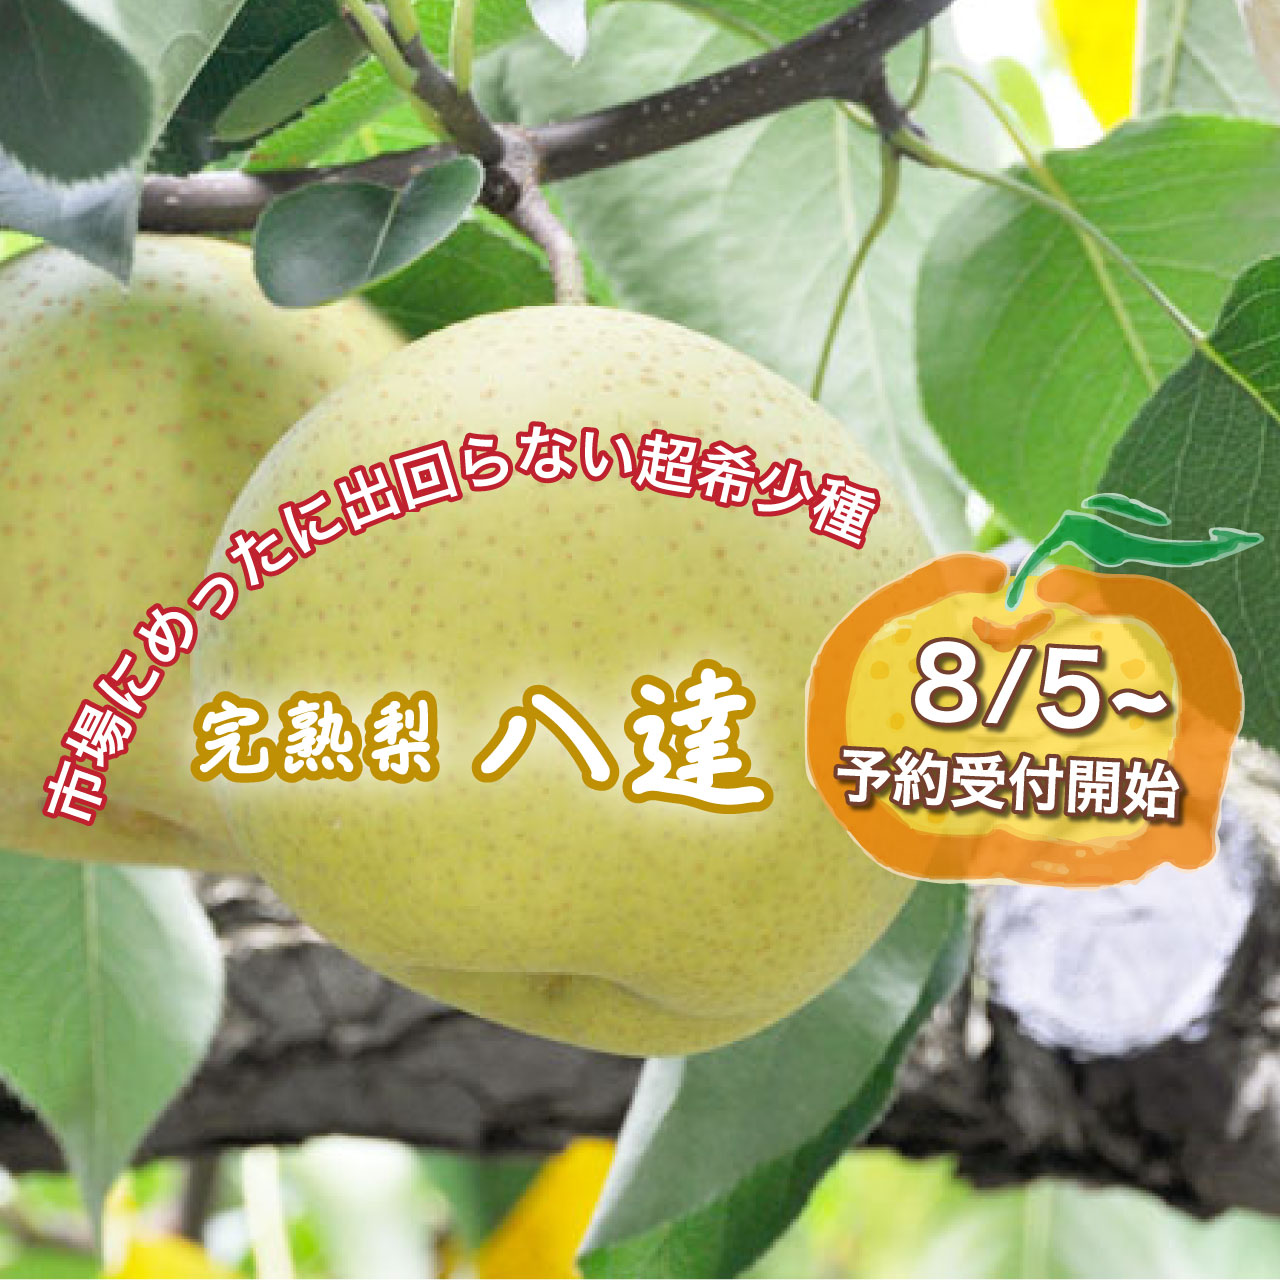 栃木県産完熟梨「超希少種・八達」を《8/5》～予約受付開始します